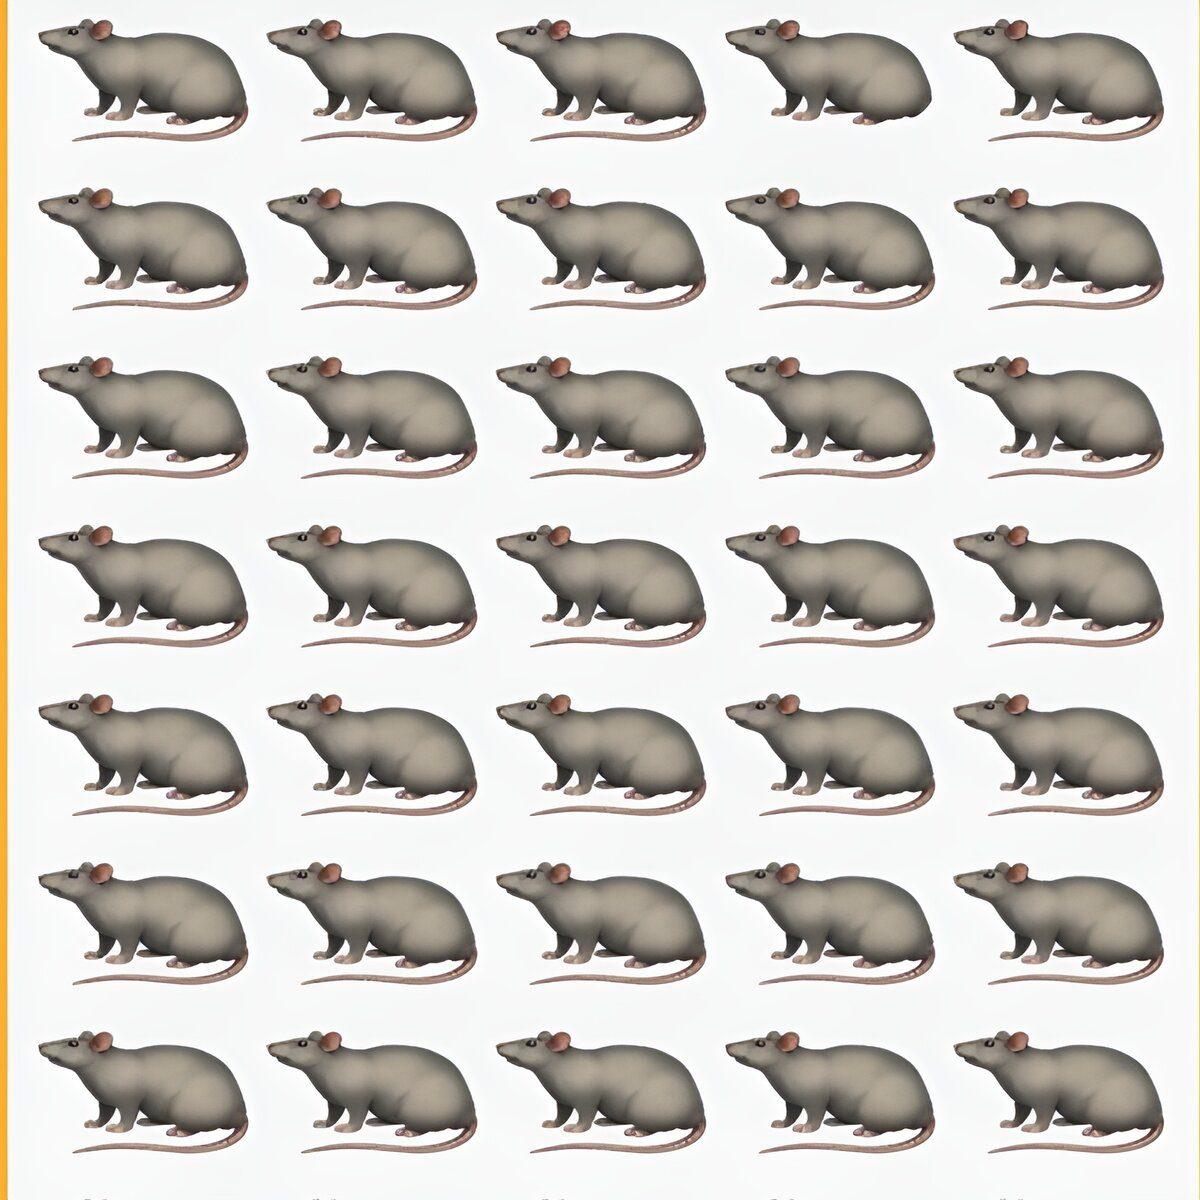 لغز الفأر الشقي.. هل يمكنك الحصول على الفأر المختلف في هذه الصورة التي أمامك خلال 15 ثانية فقط؟!